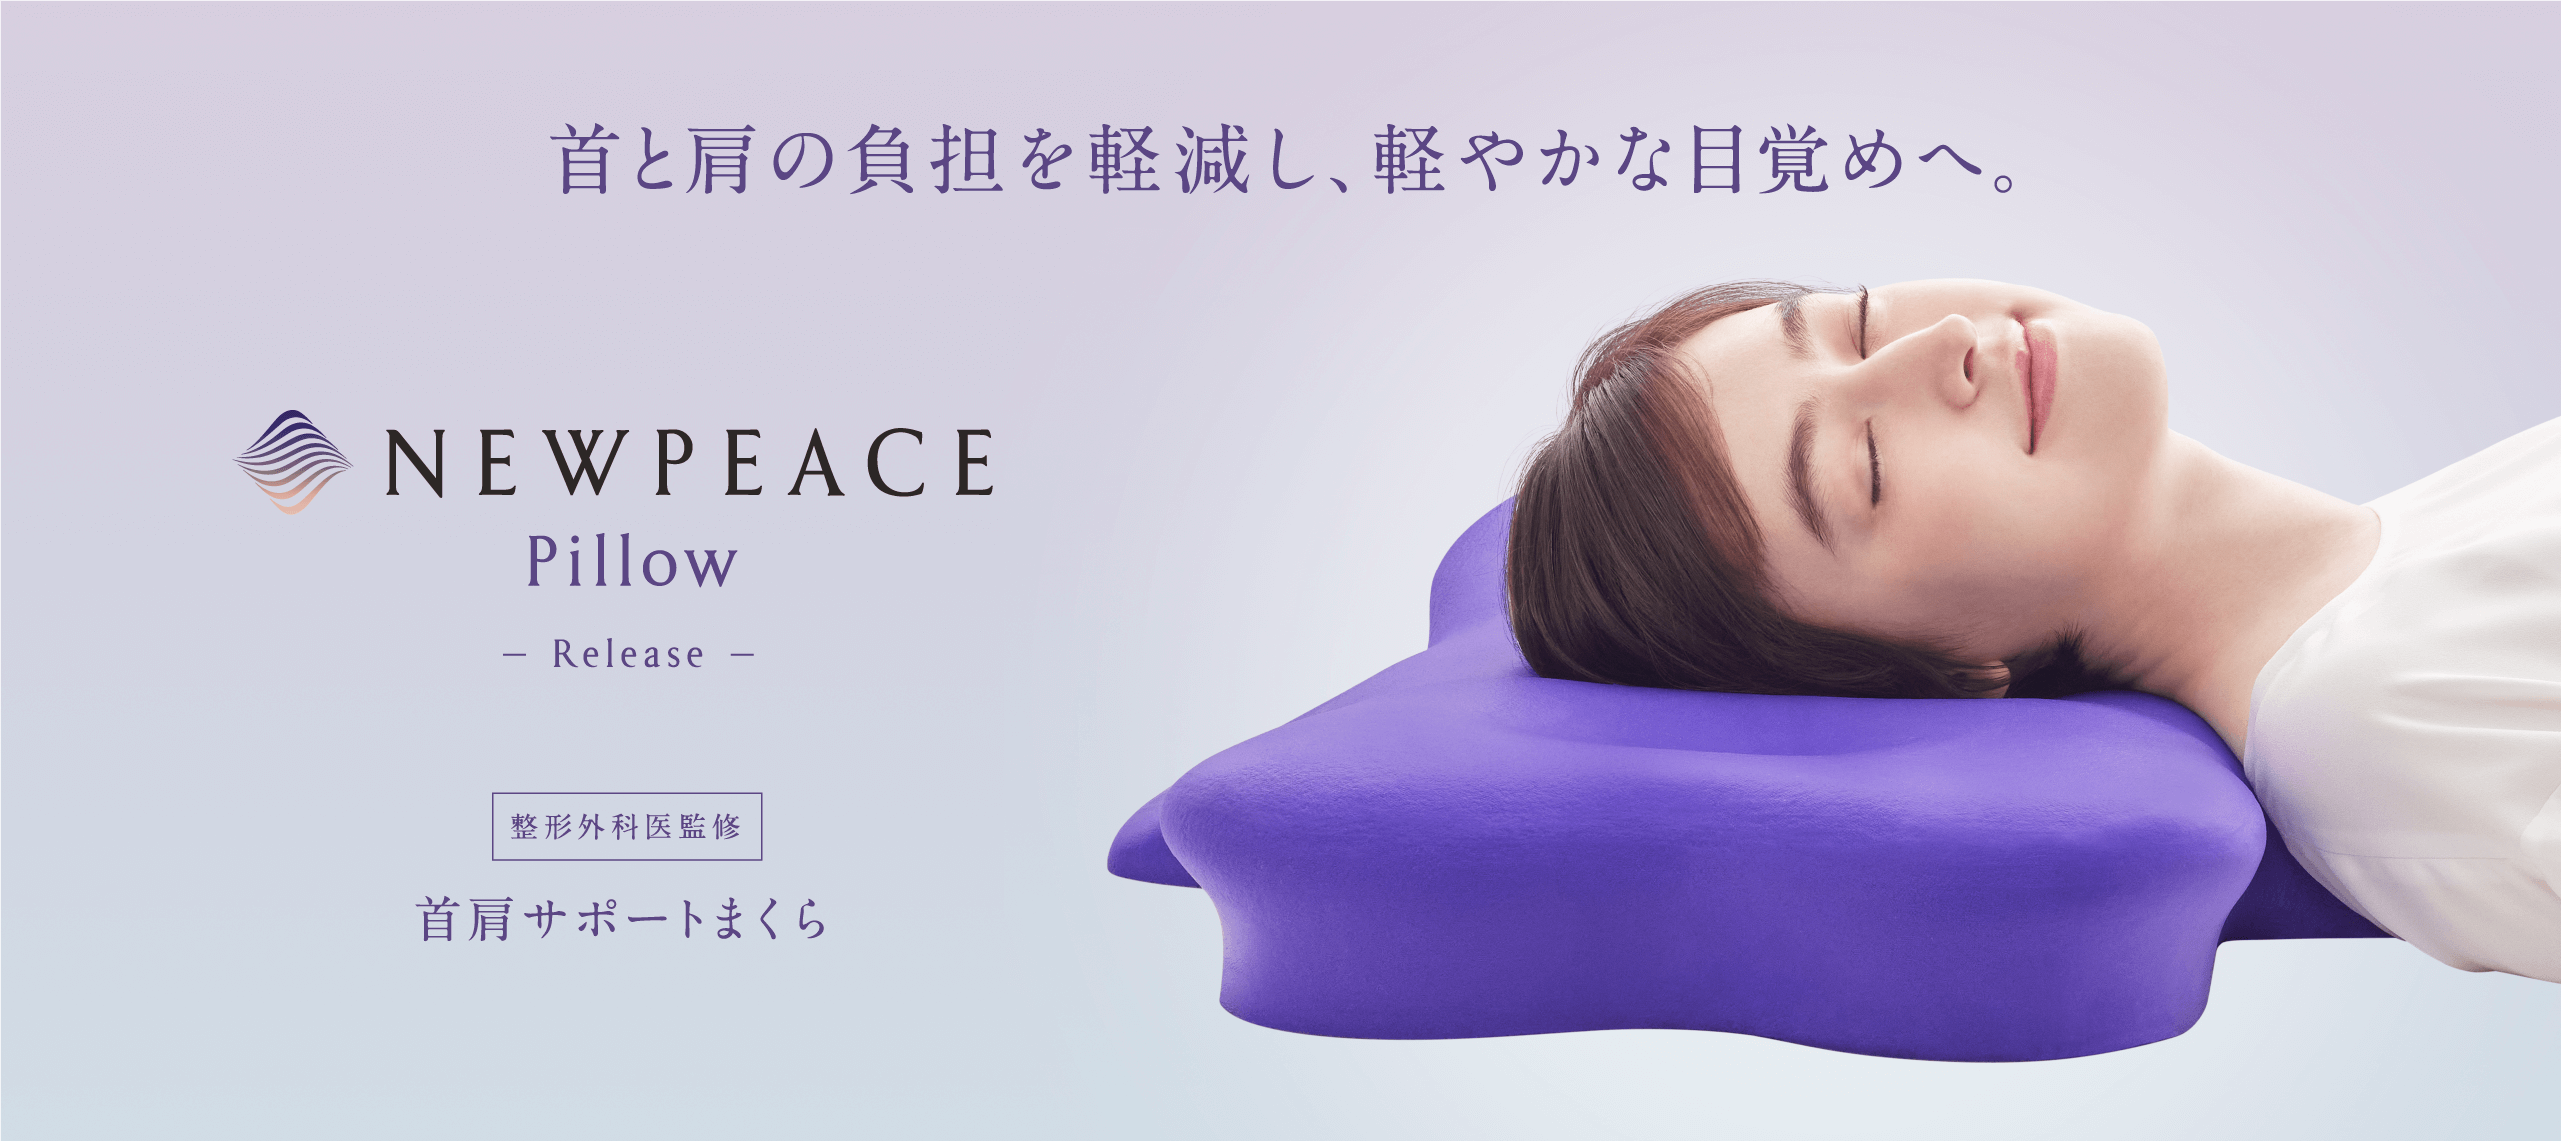 NEWPEACE Pillow